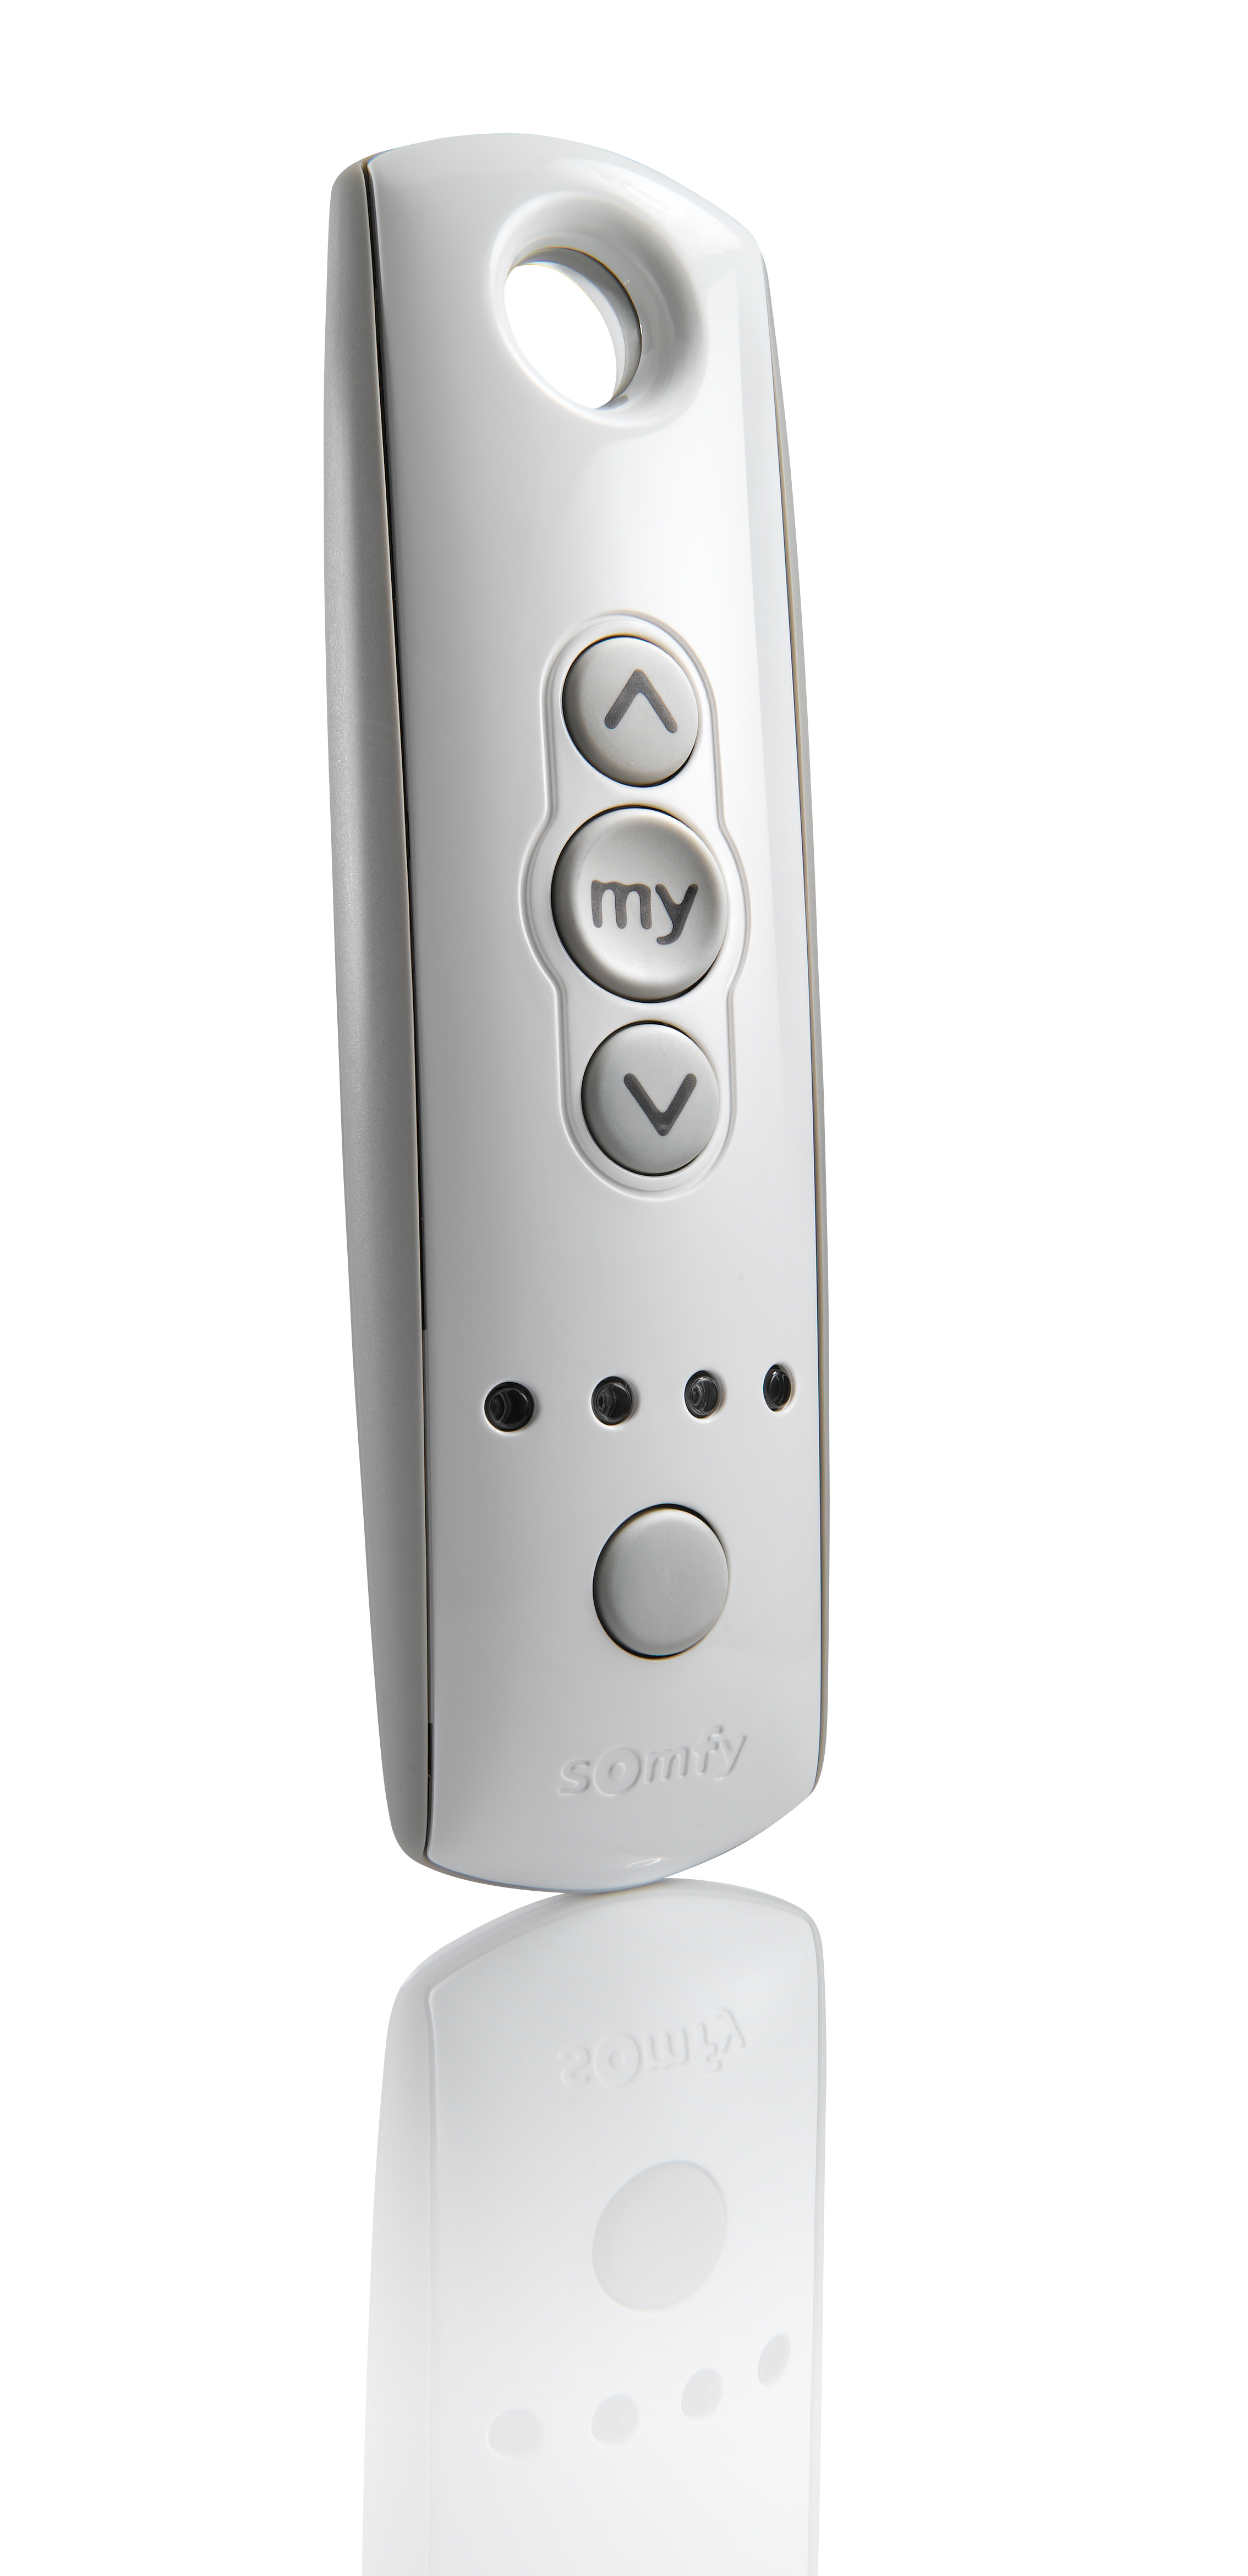 Somfy RTS remote